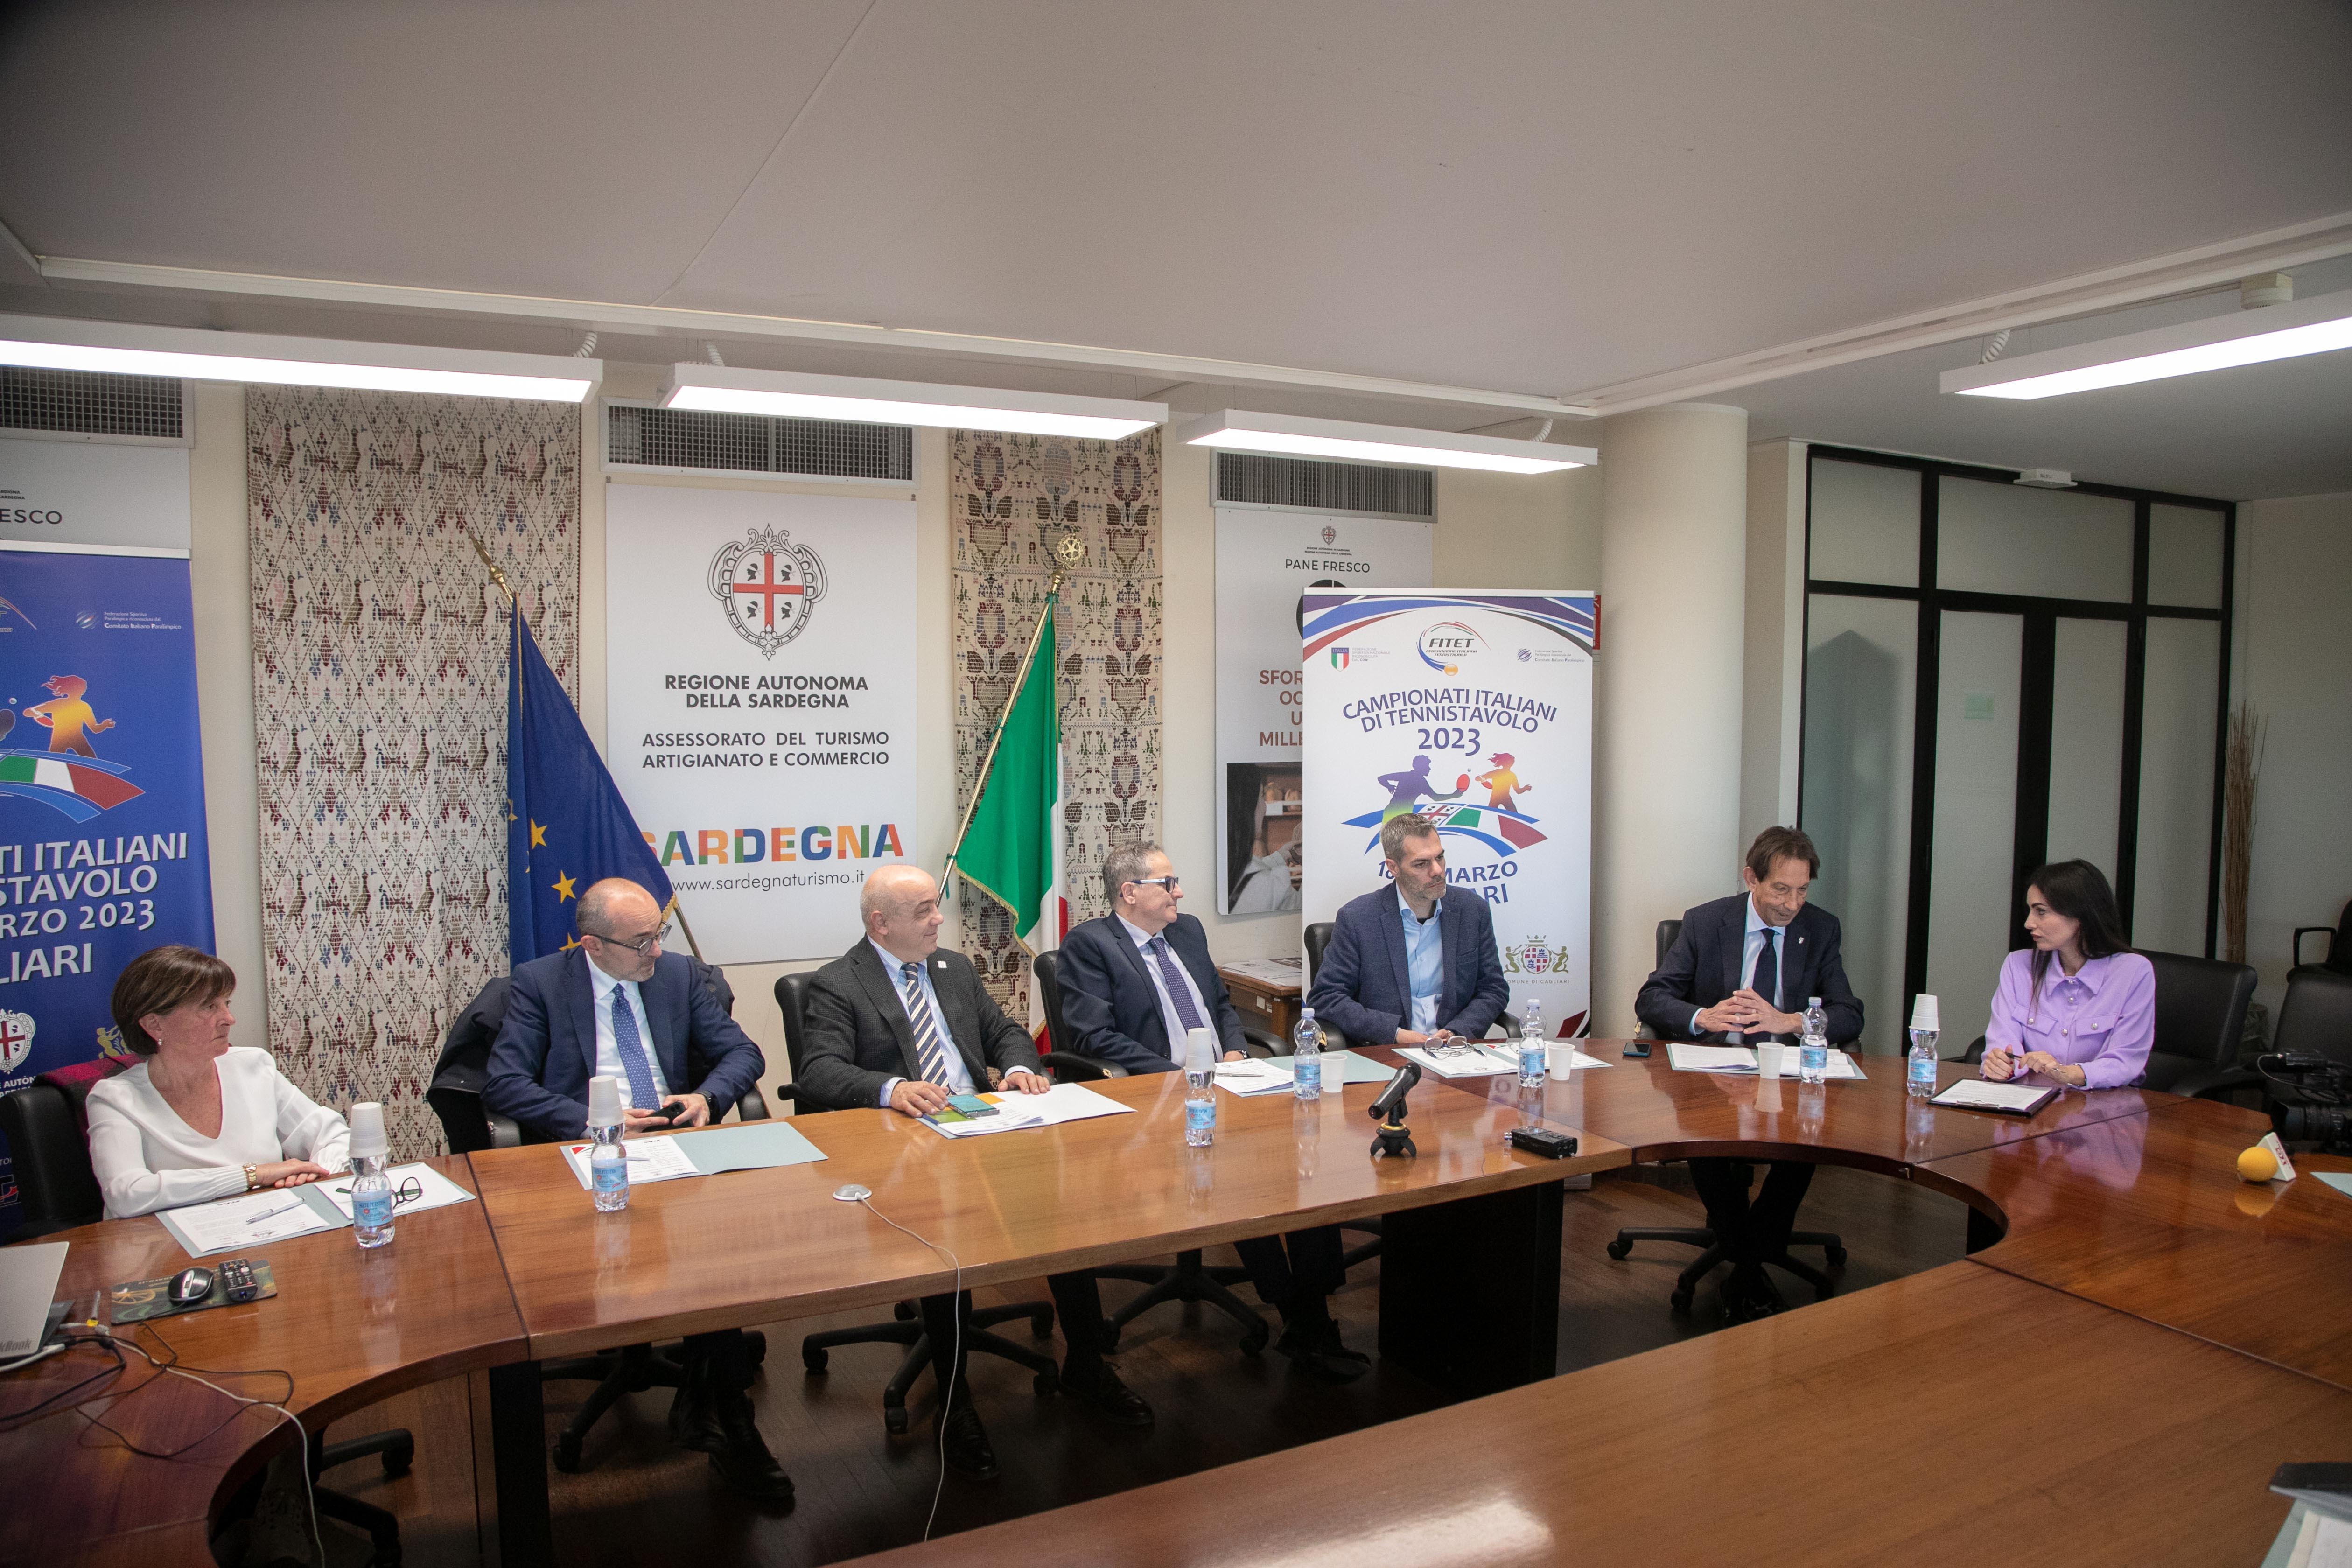 Conferenza stampa Campionati Italiani di Cagliari 2023 tavolo dei relatori